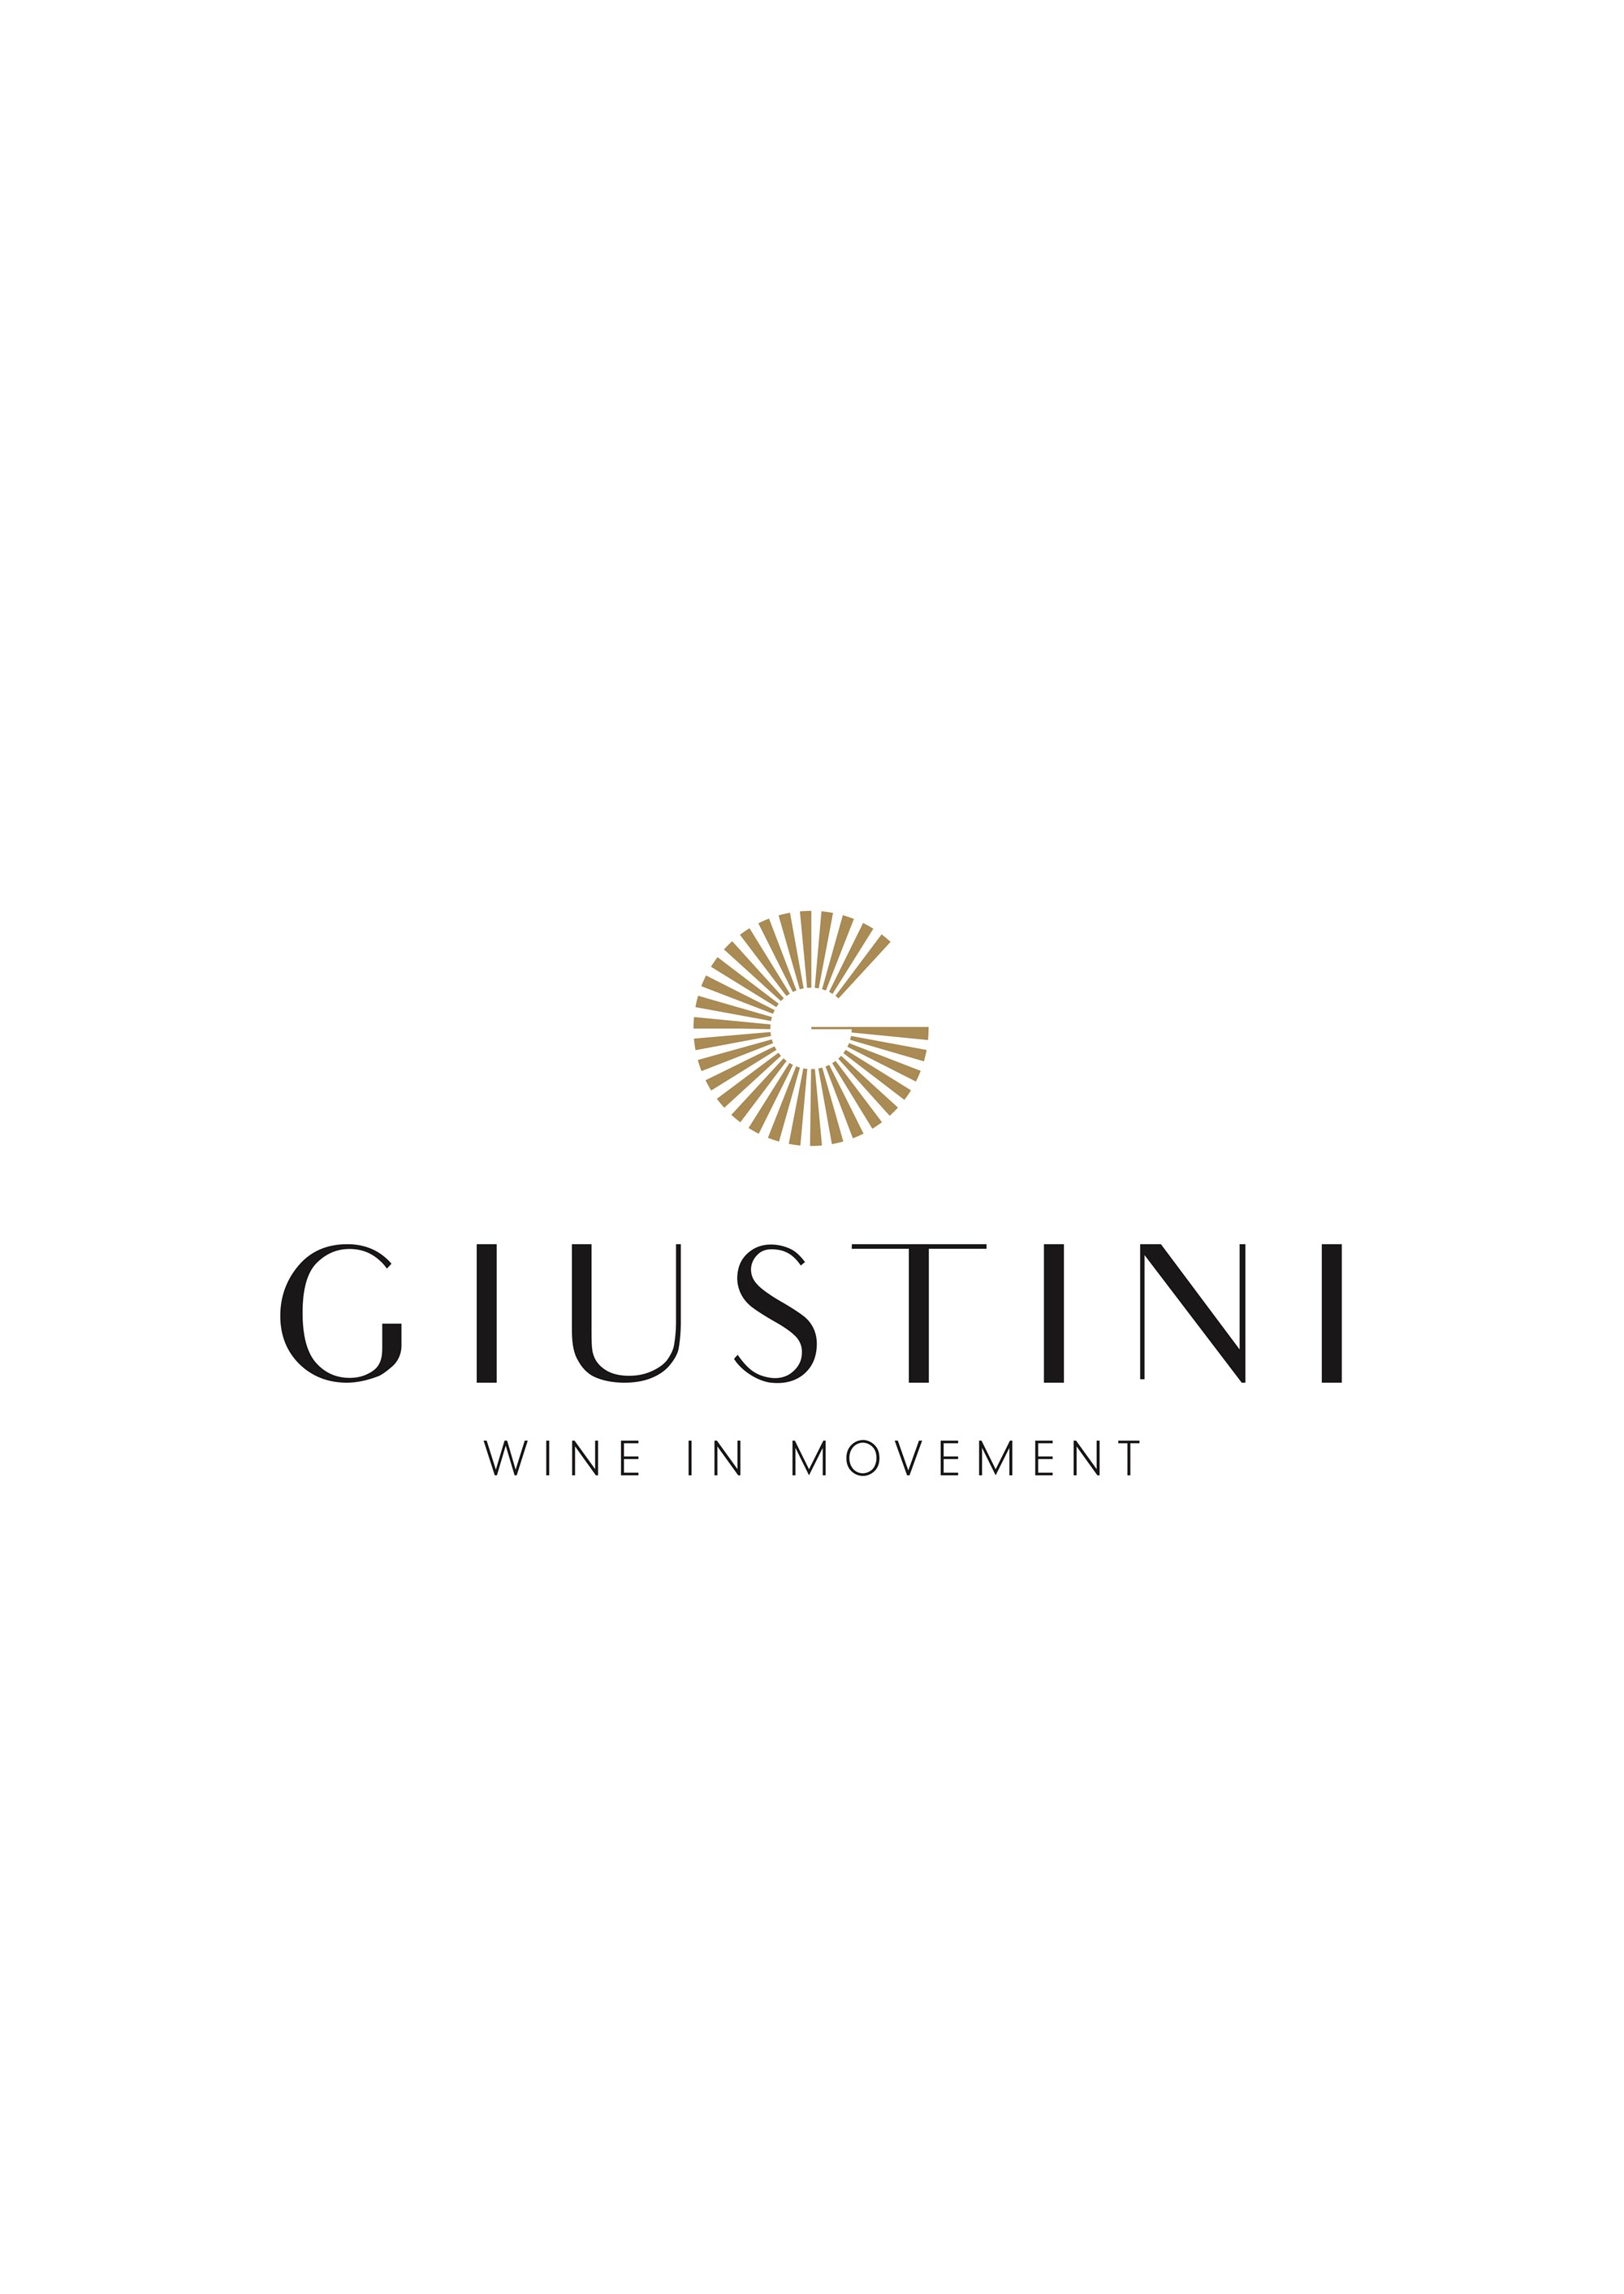 Giustini—Marchio 02